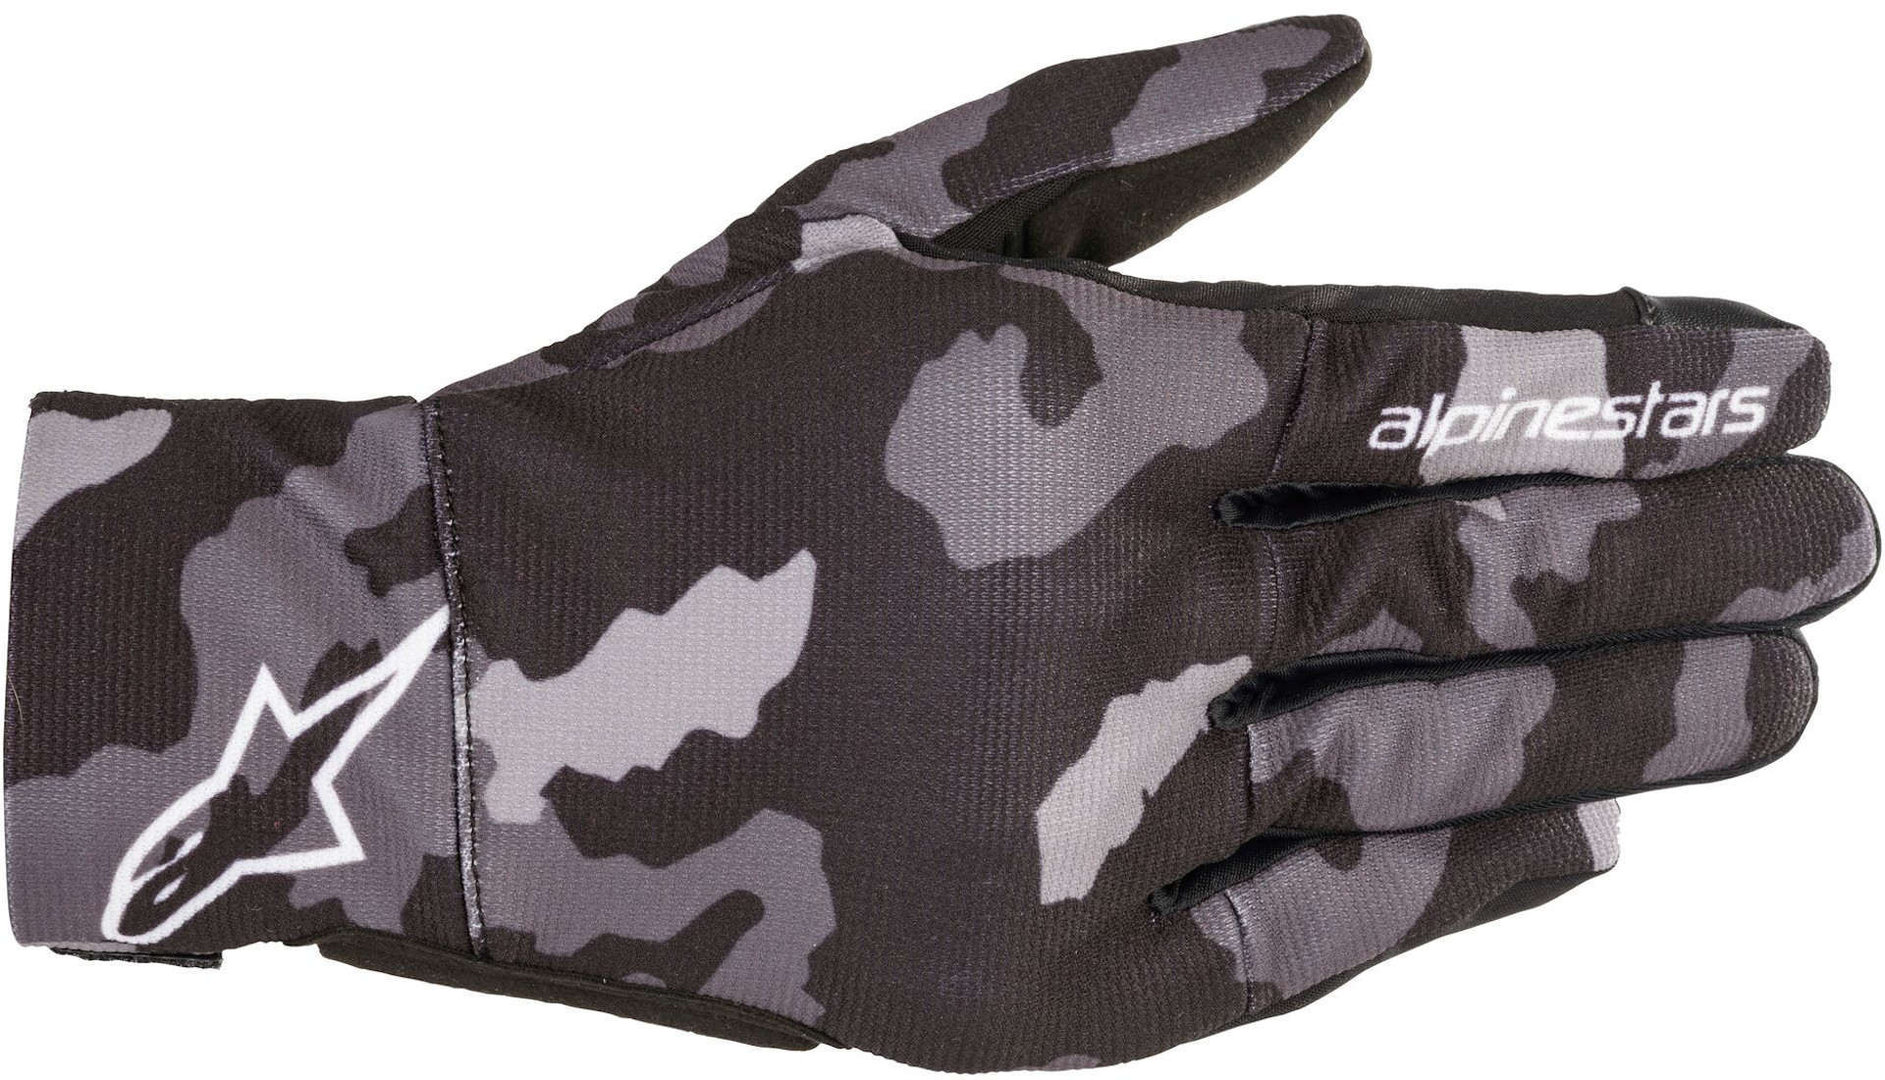 Alpinestars Reef Motorrad Handschuhe, schwarz-grün-mehrfarbig, Größe 3XL, schwarz-grün-mehrfarbig, Größe 3XL